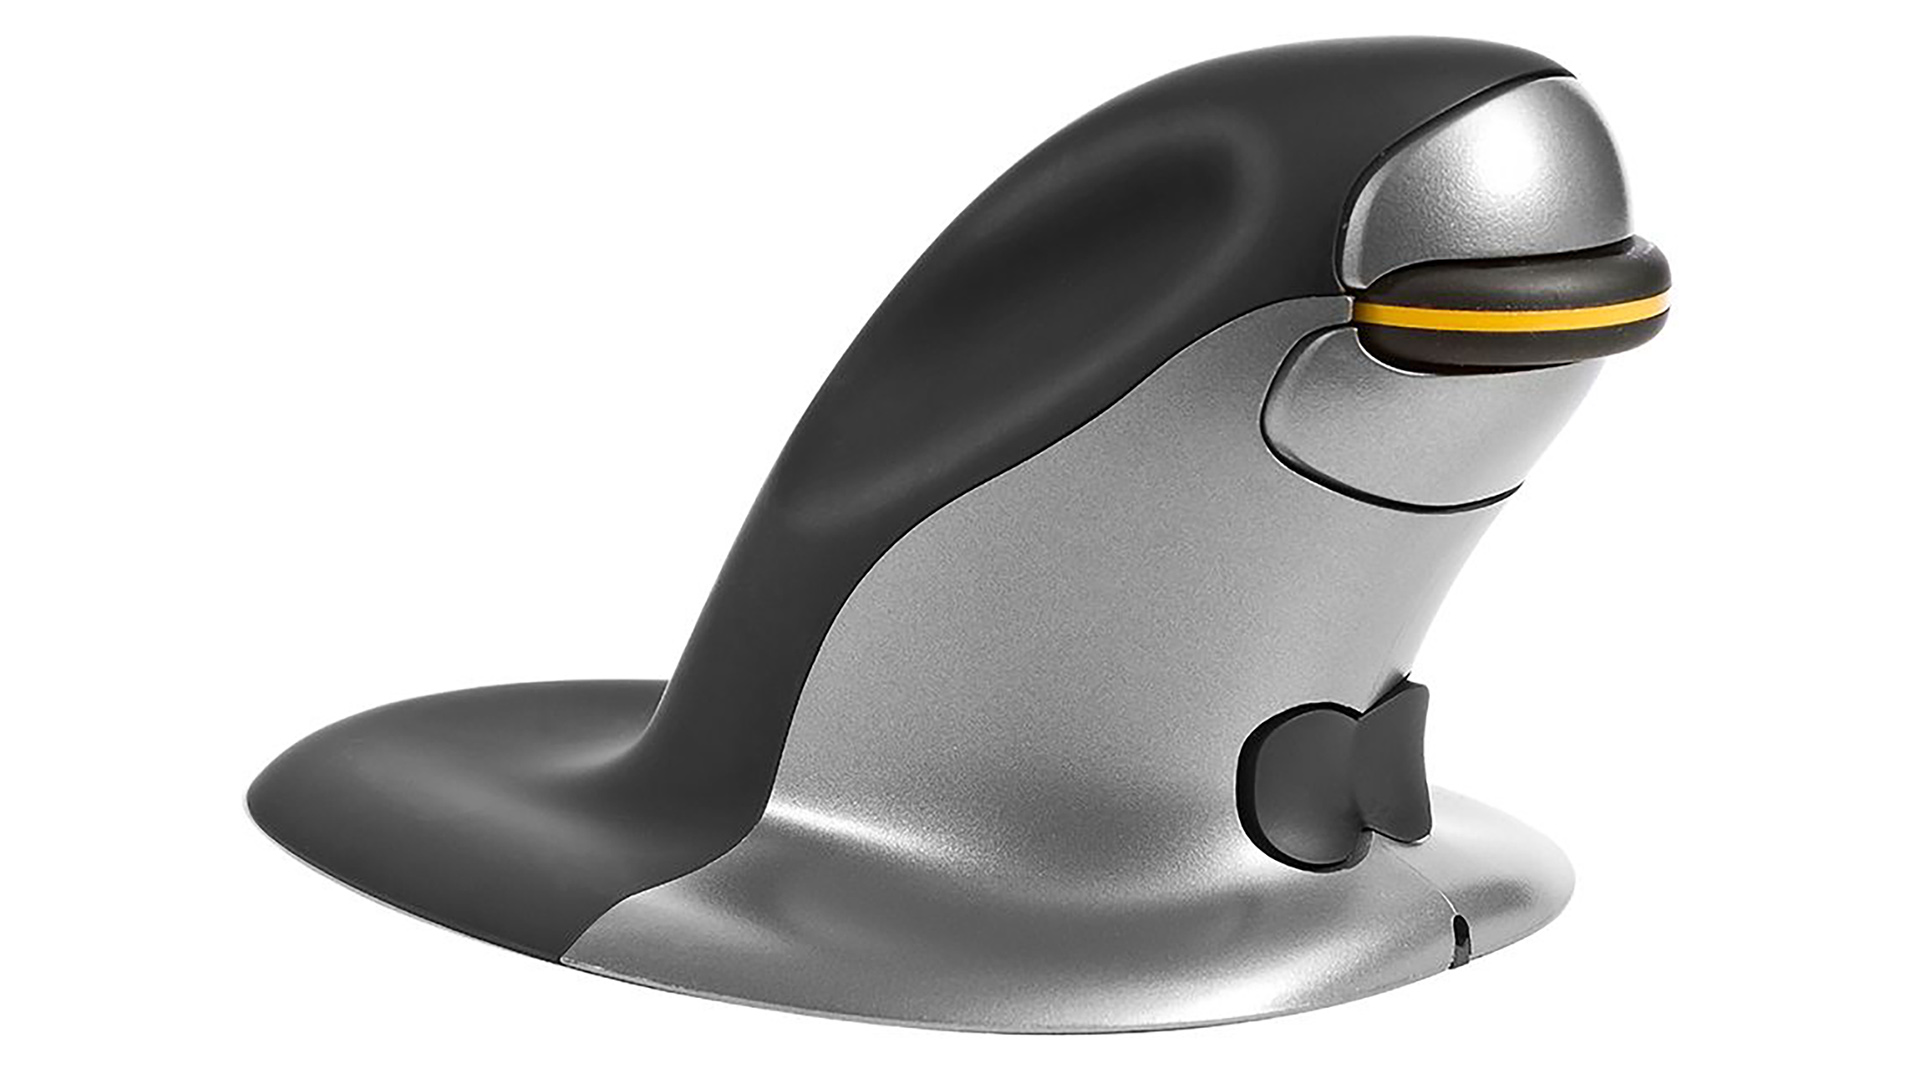 Posturite Penguin